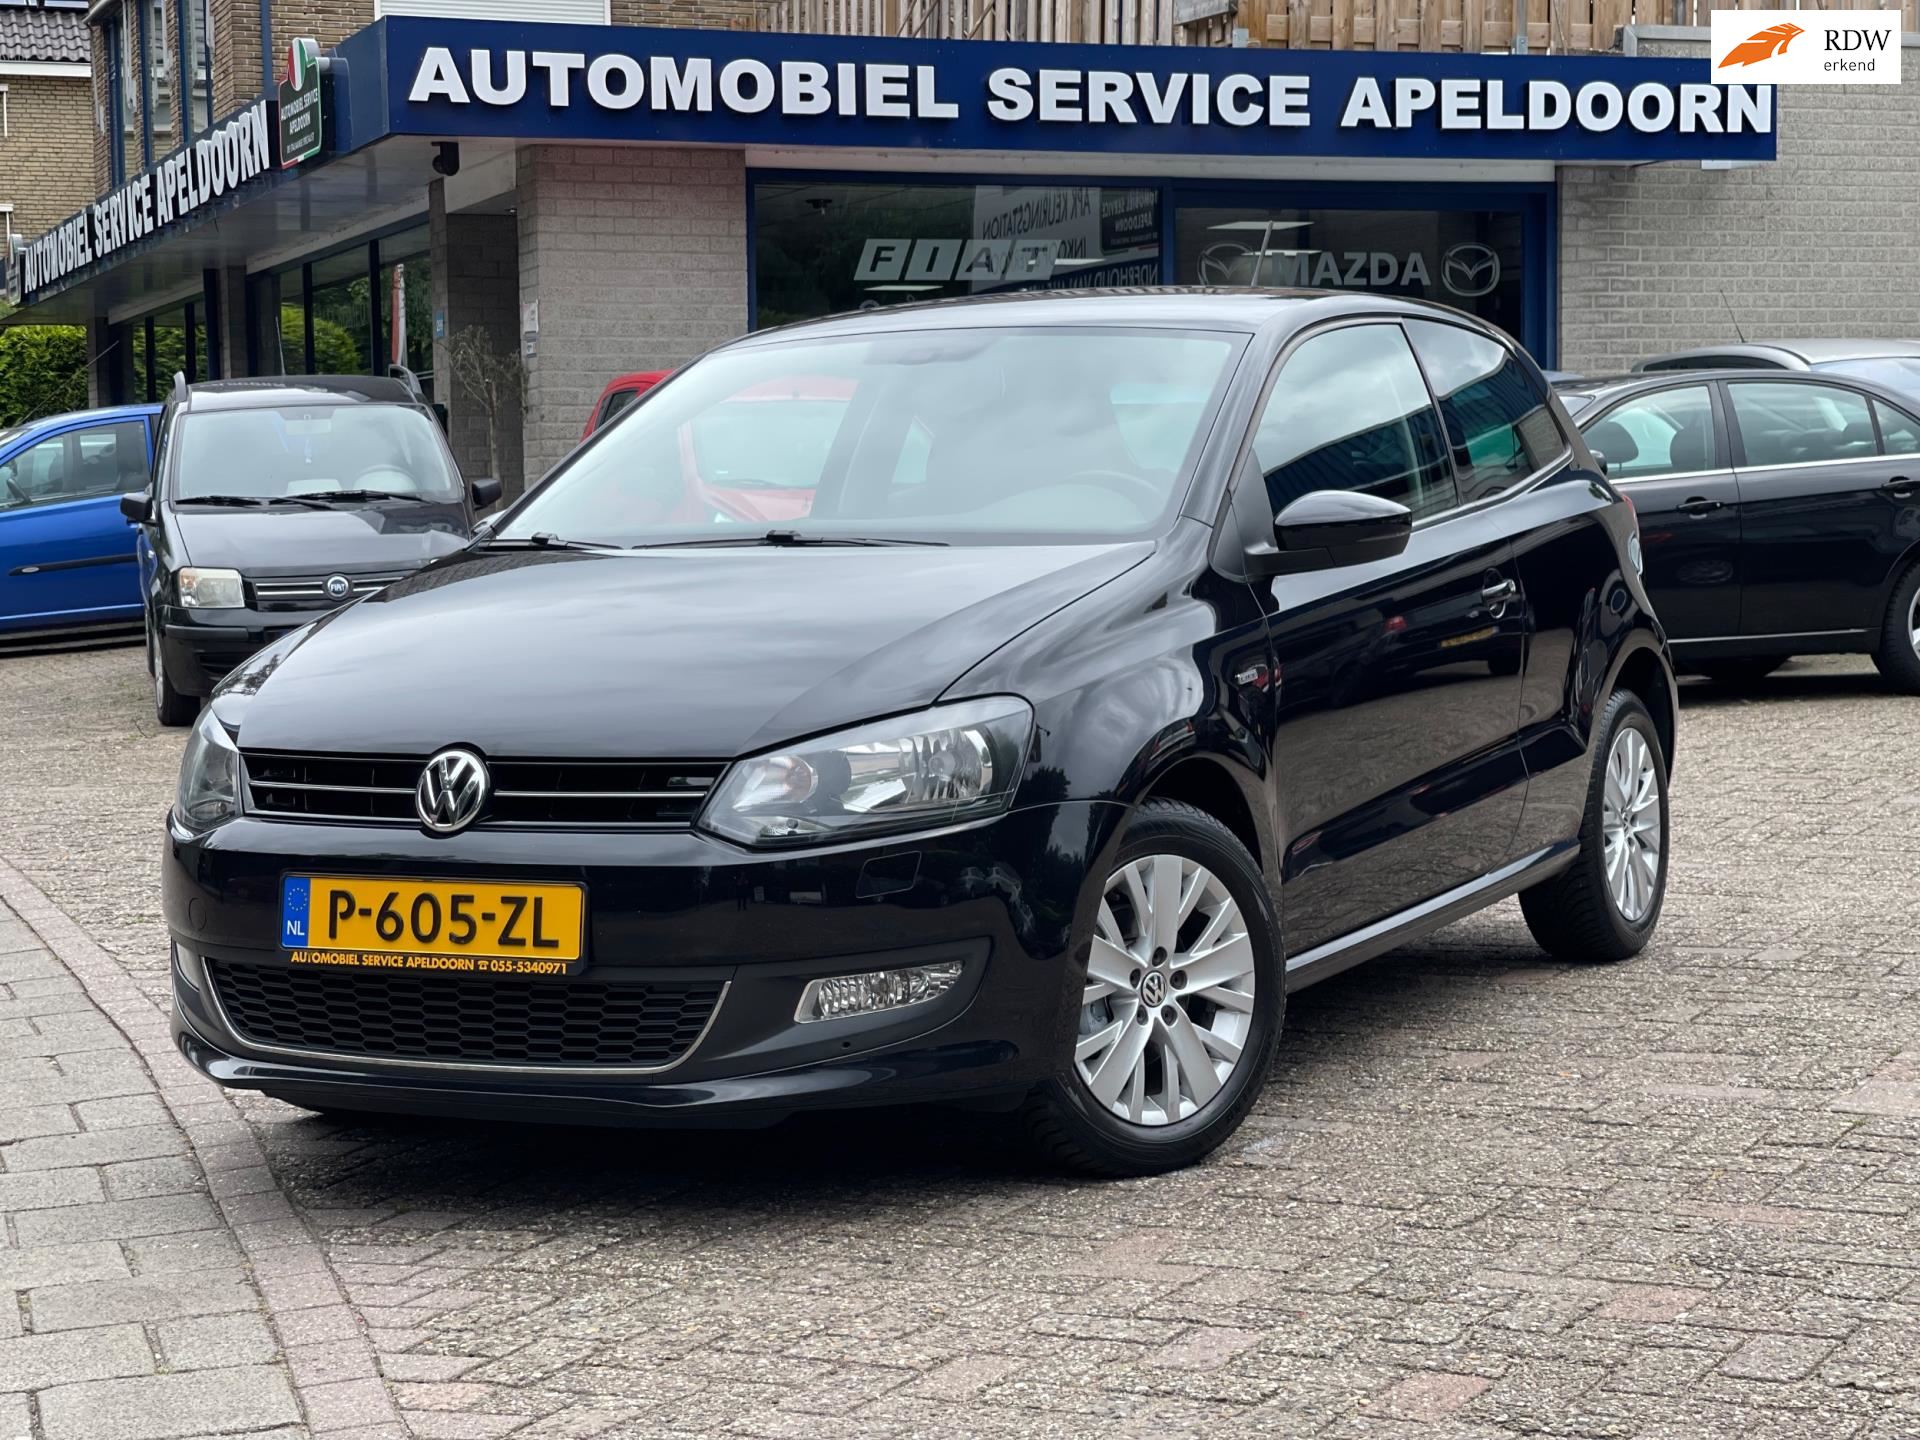 Volkswagen POLO occasion - Automobiel Service Apeldoorn